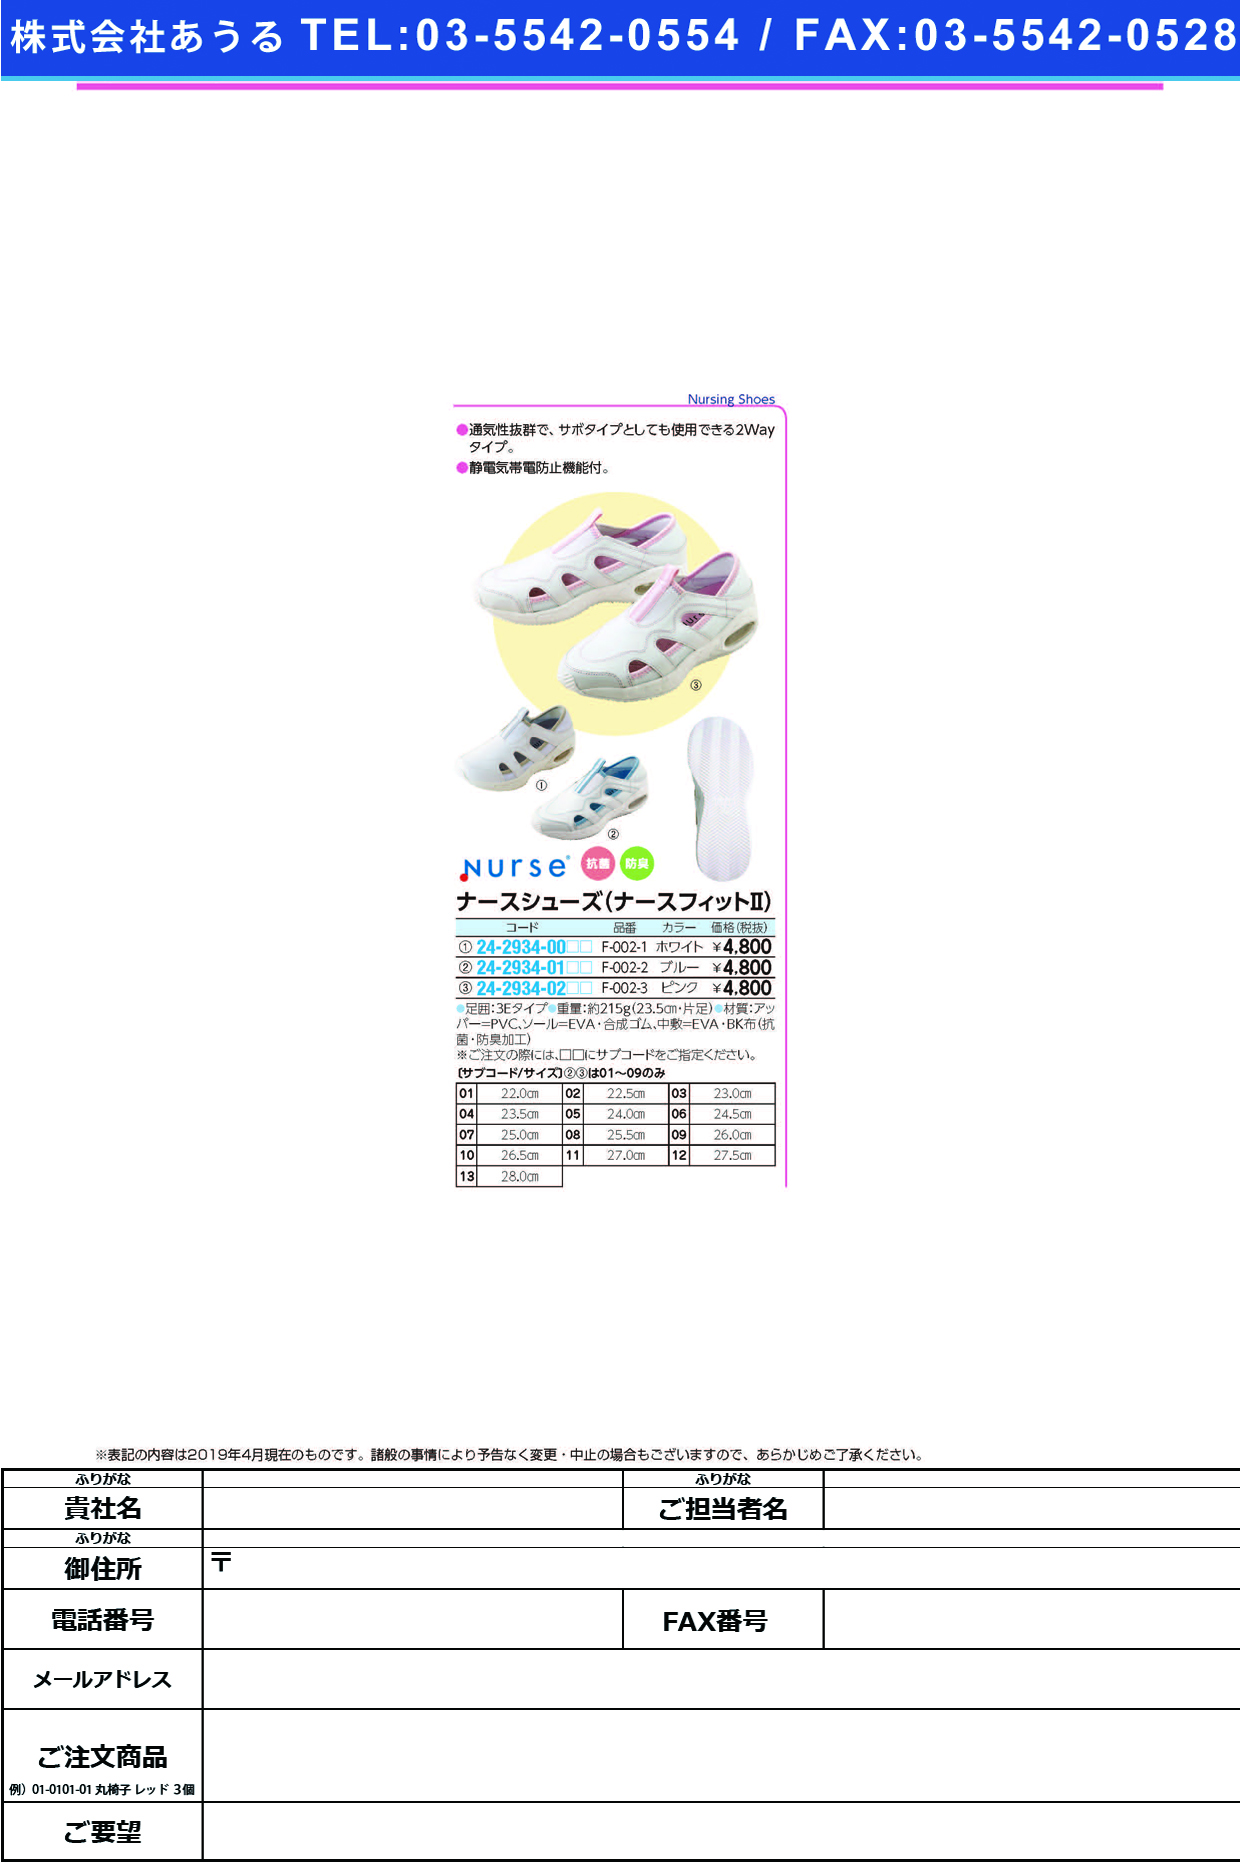 (24-2934-02)ナースシューズナースフィットⅡ F-002-3(ﾋﾟﾝｸ) ﾅｰｽｼｭｰｽﾞﾅｰｽﾌｨｯﾄ2 ２３．０ｃｍ(フォーク)【1足単位】【2019年カタログ商品】